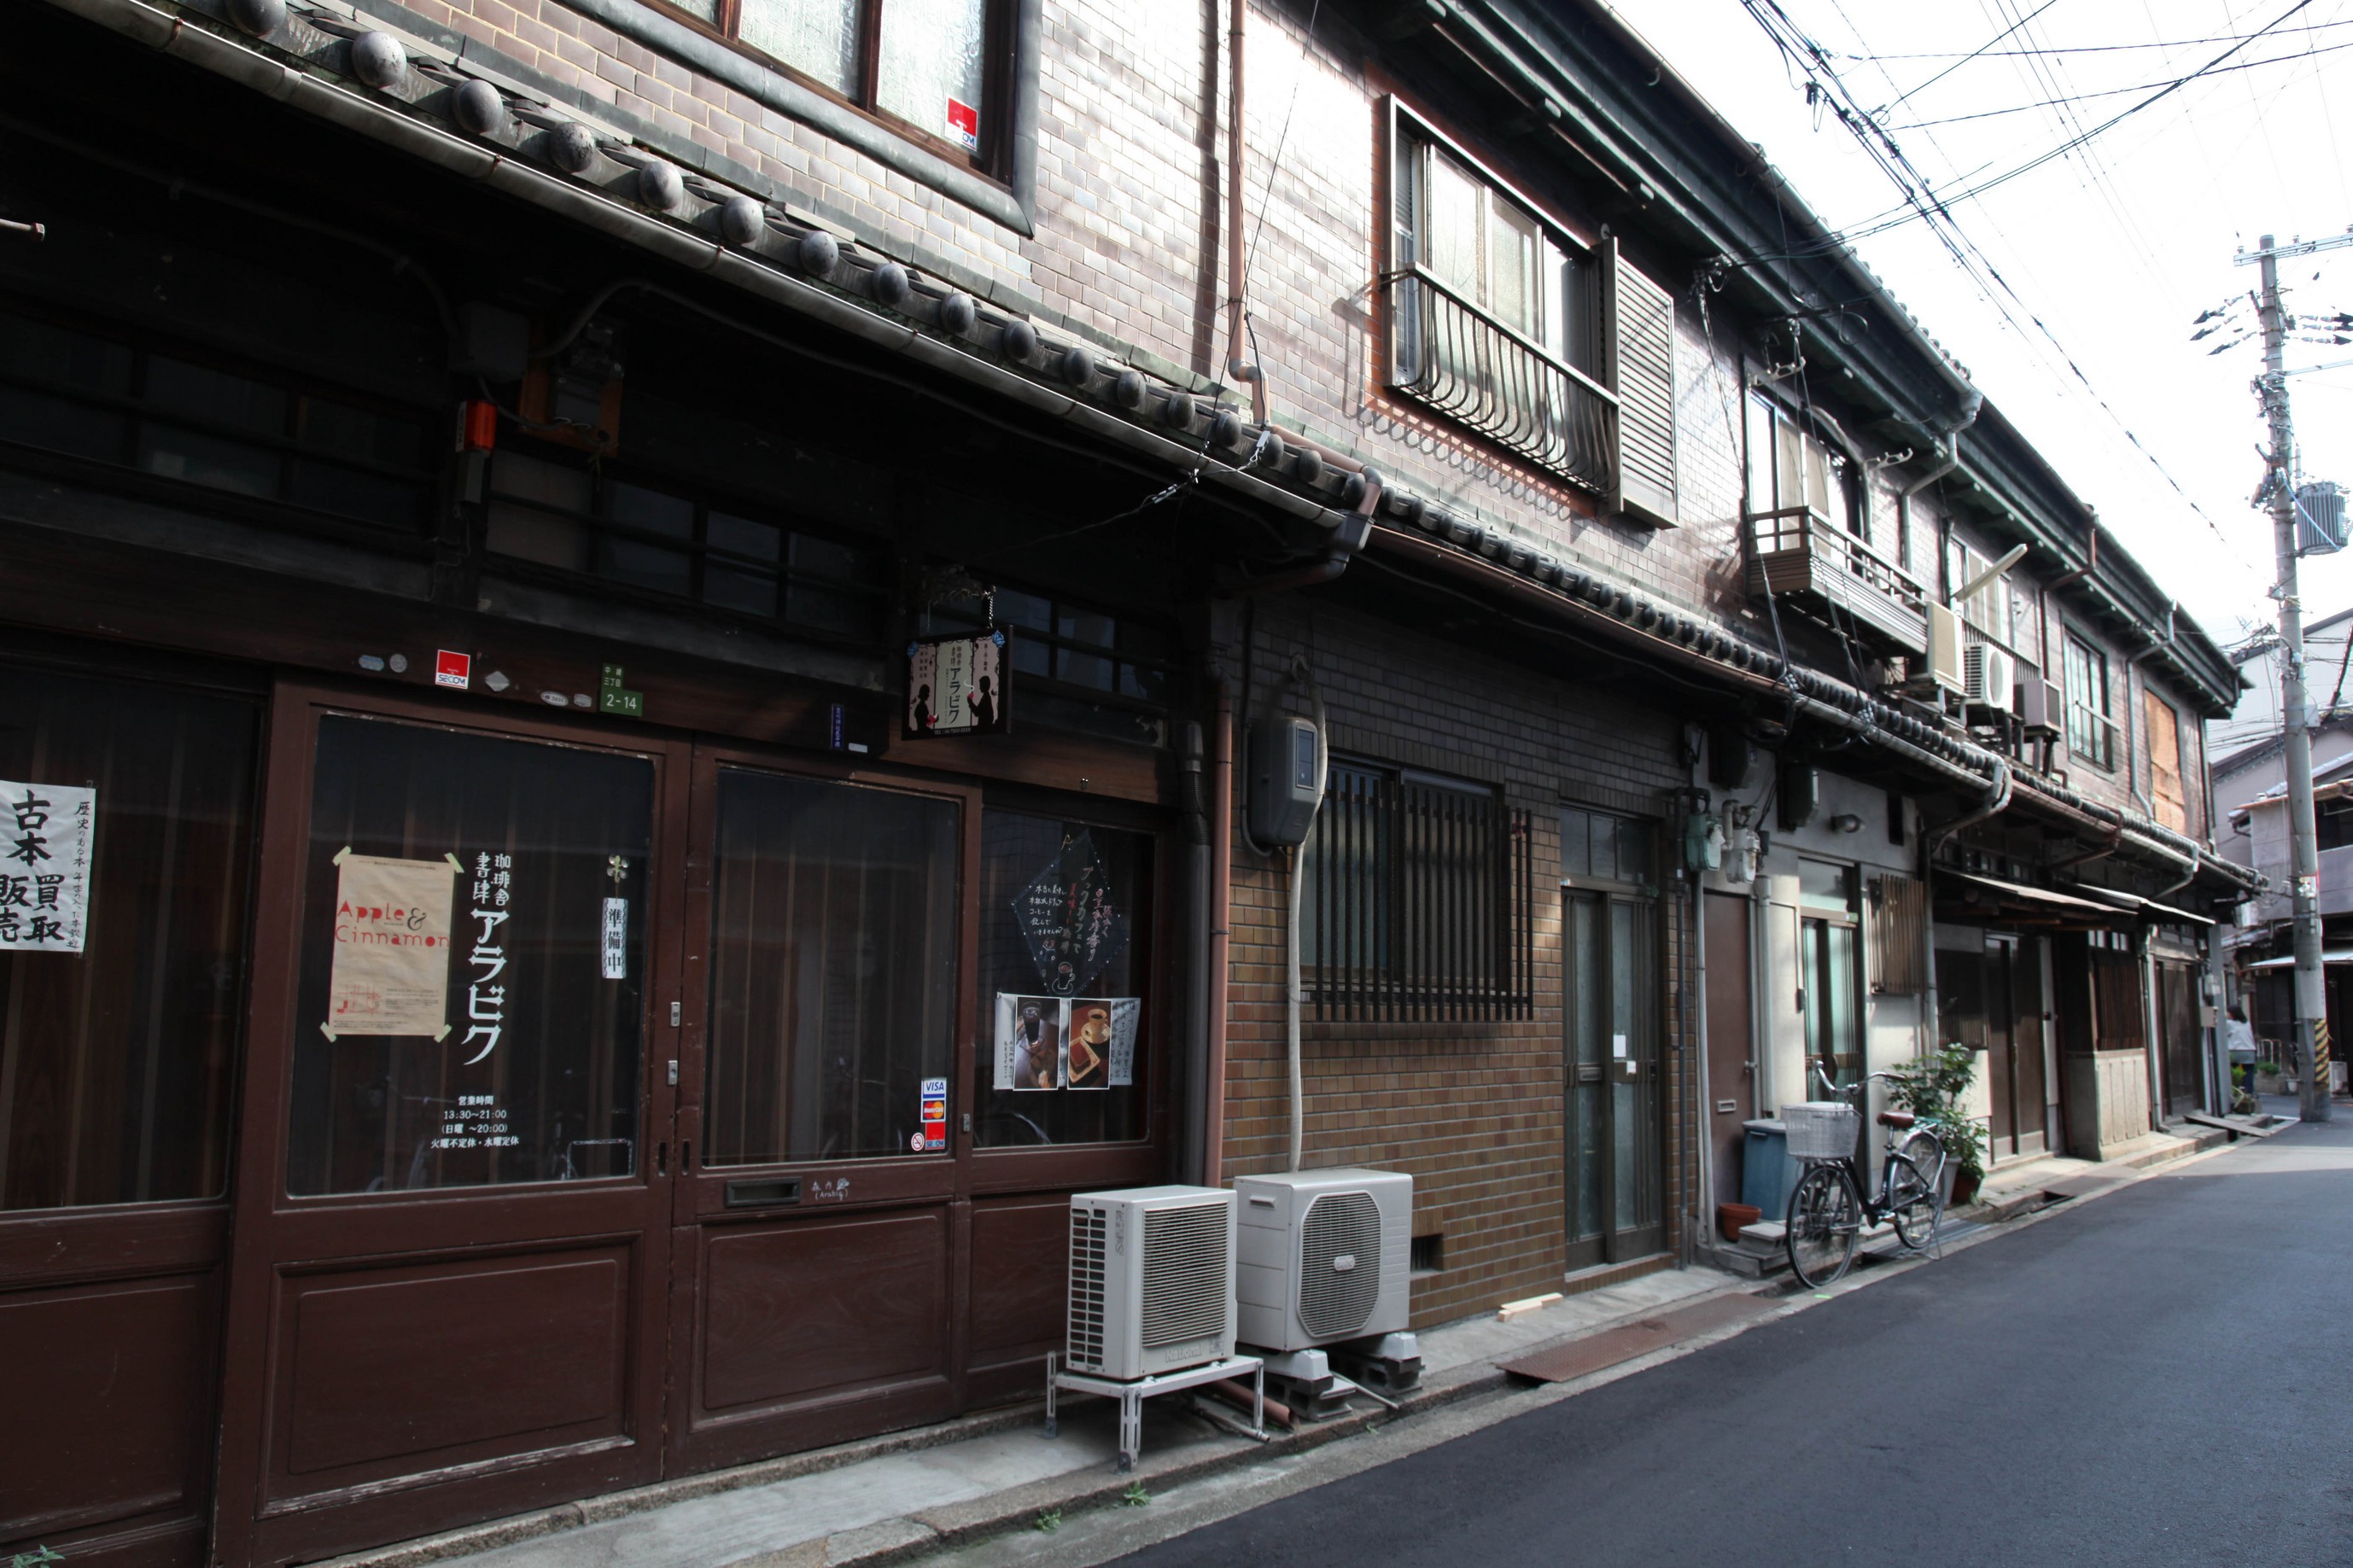 Khu phố có nhiều cửa hàng quần áo cũ ở Osaka③：Nakazaki-cho